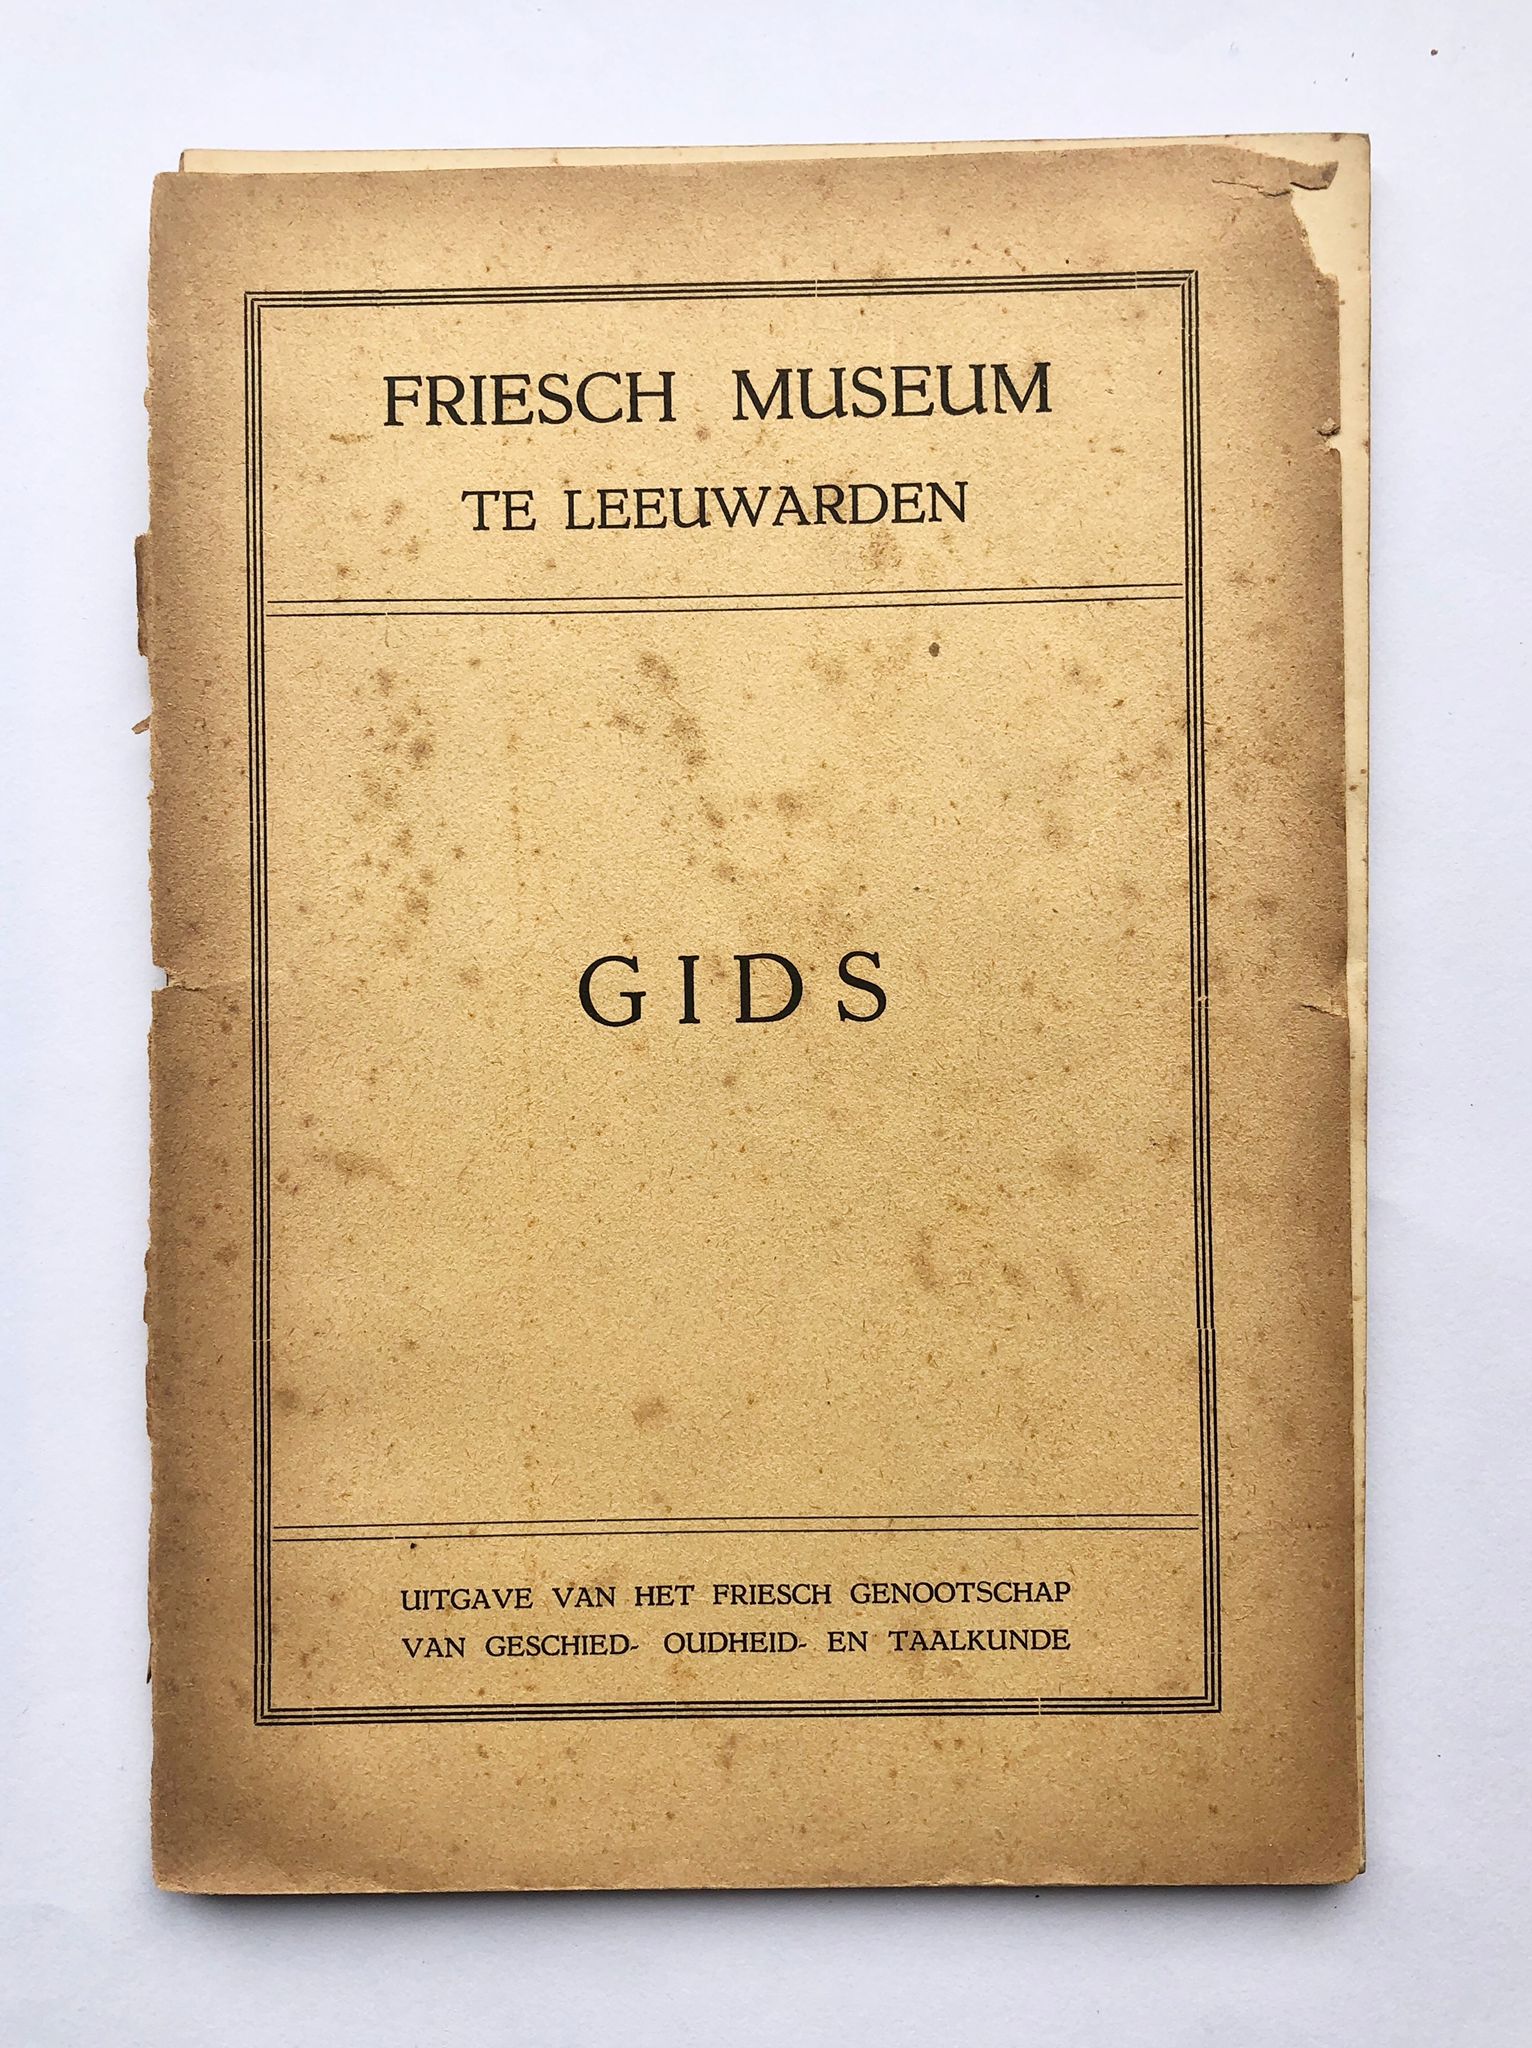 [Friesland, Leeuwarden] Gids, Friesch Museum te Leeuwarden, uitgave van het Friesch genootschap van geschied-, oudheid- en taalkunde, Coöperatieve handelsdrukkerij, Leeuwarden, 92 pp.